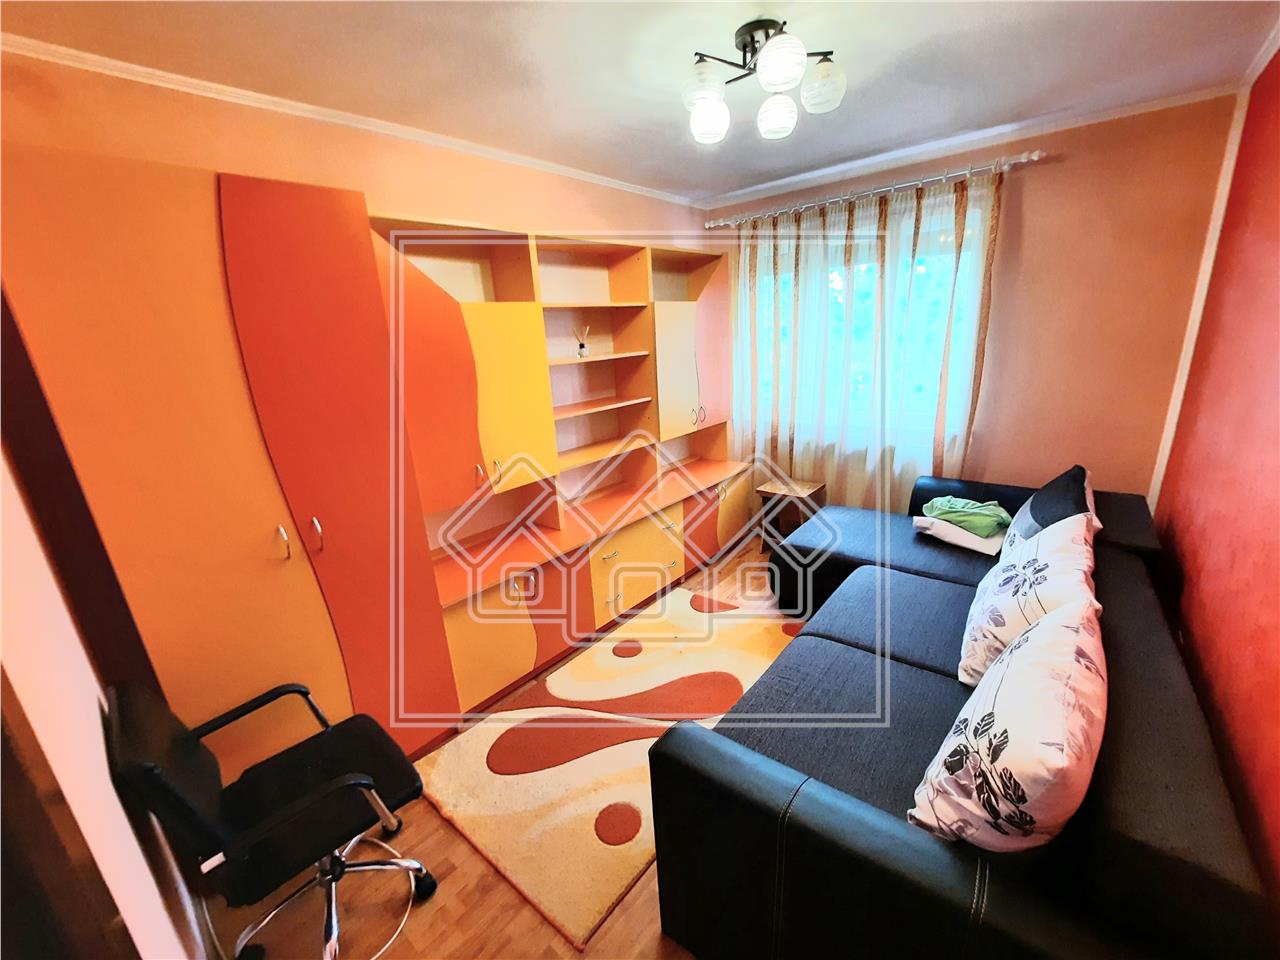 Wohnung zum Verkauf in Alba Iulia - 2 Zimmer - Cetate-Bereich